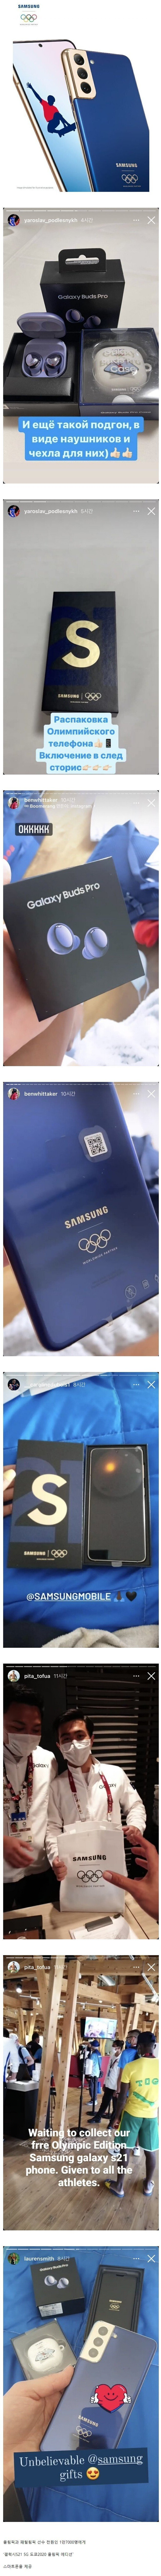 삼성 마케팅 s21을 수령한 올림픽 선수들이 올리는 sns 글들